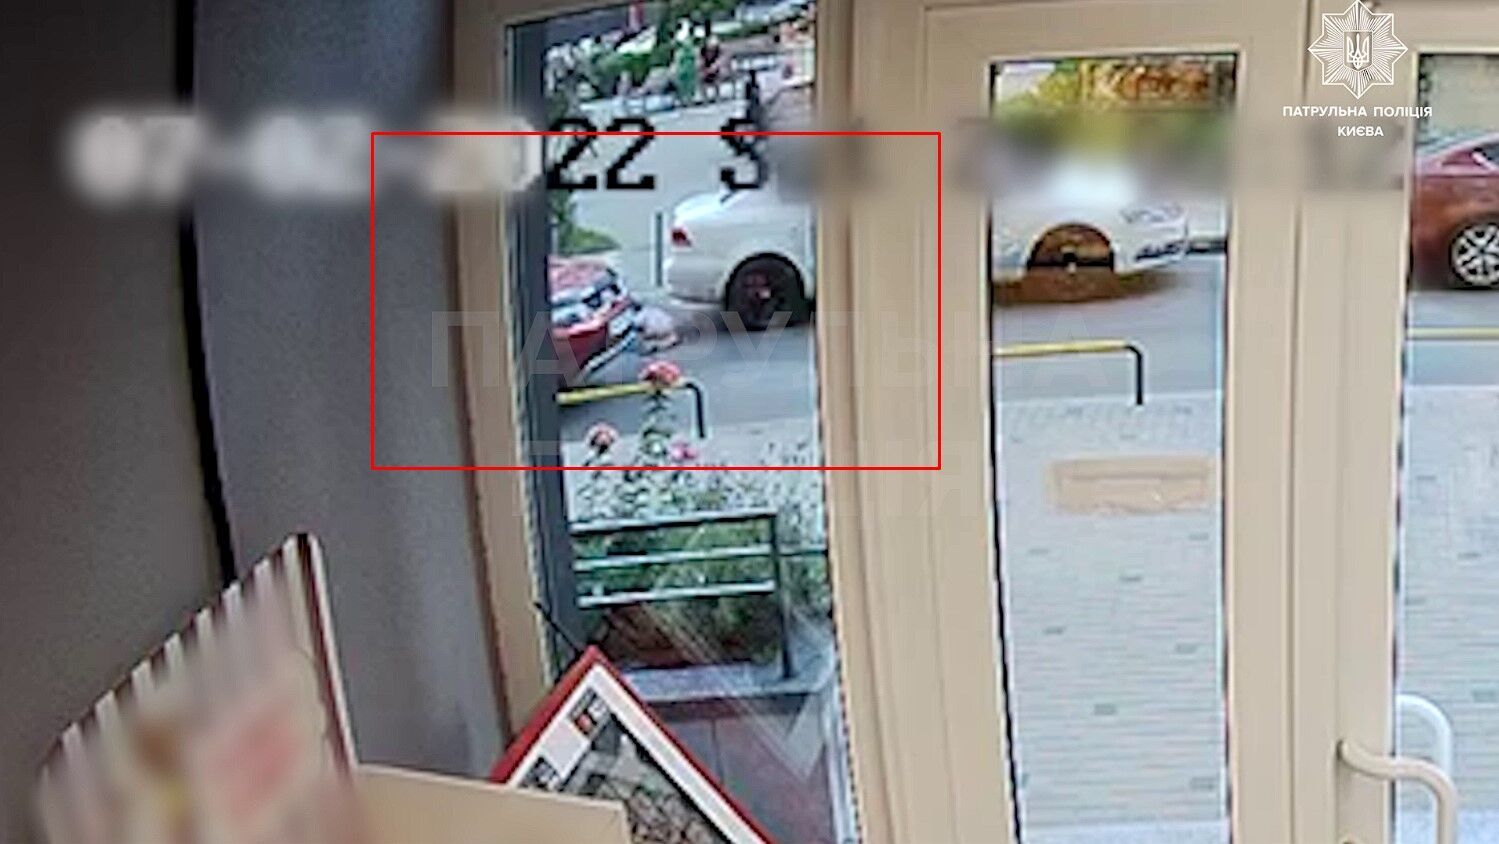 Момент аварии записала видеокамера в магазине.